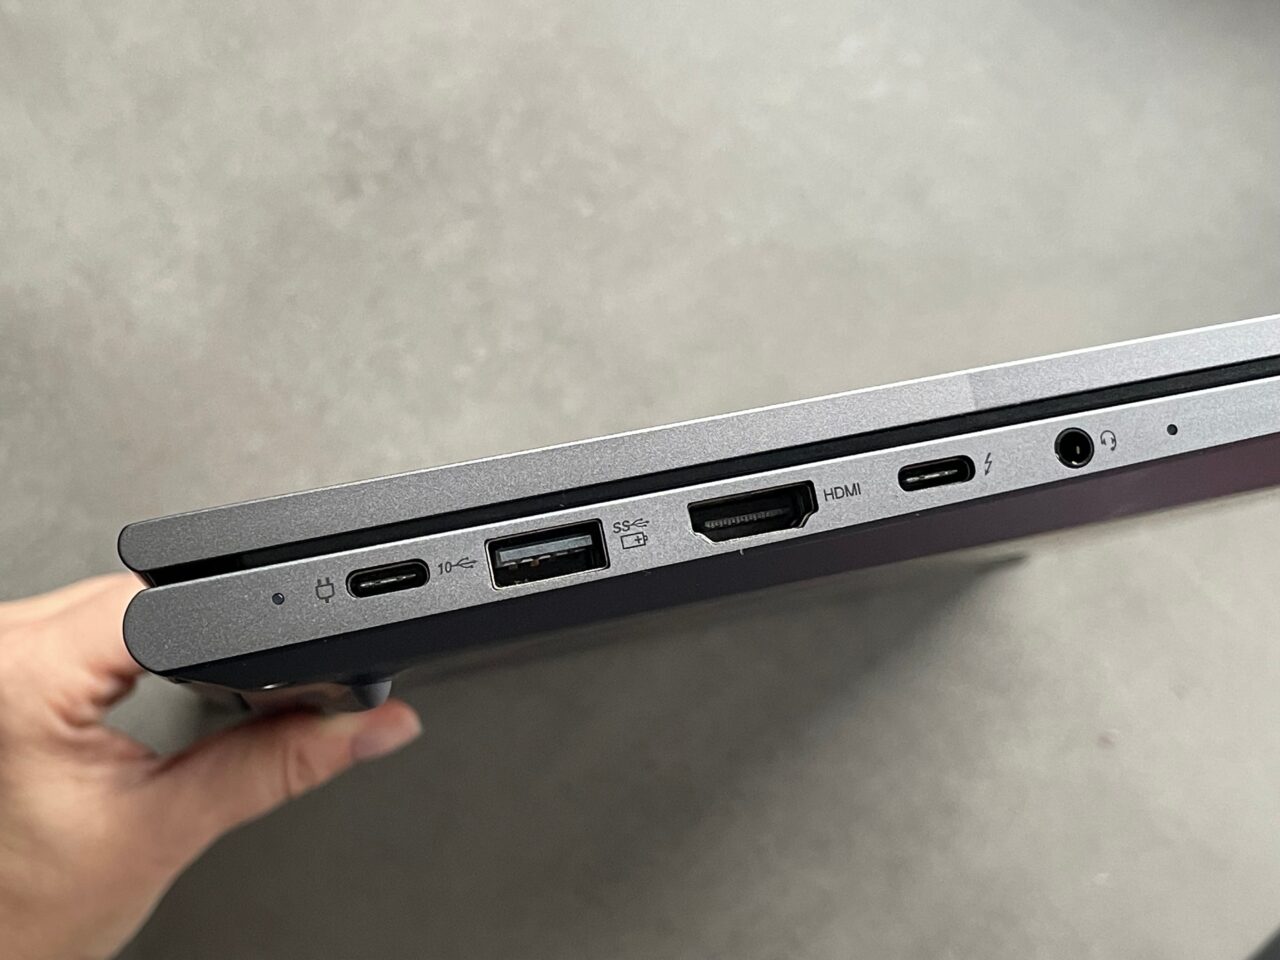 Bok laptopa trzymanego w dłoni z widocznymi portami: USB-C, USB-A, HDMI, gniazdo słuchawkowe i karta SD.